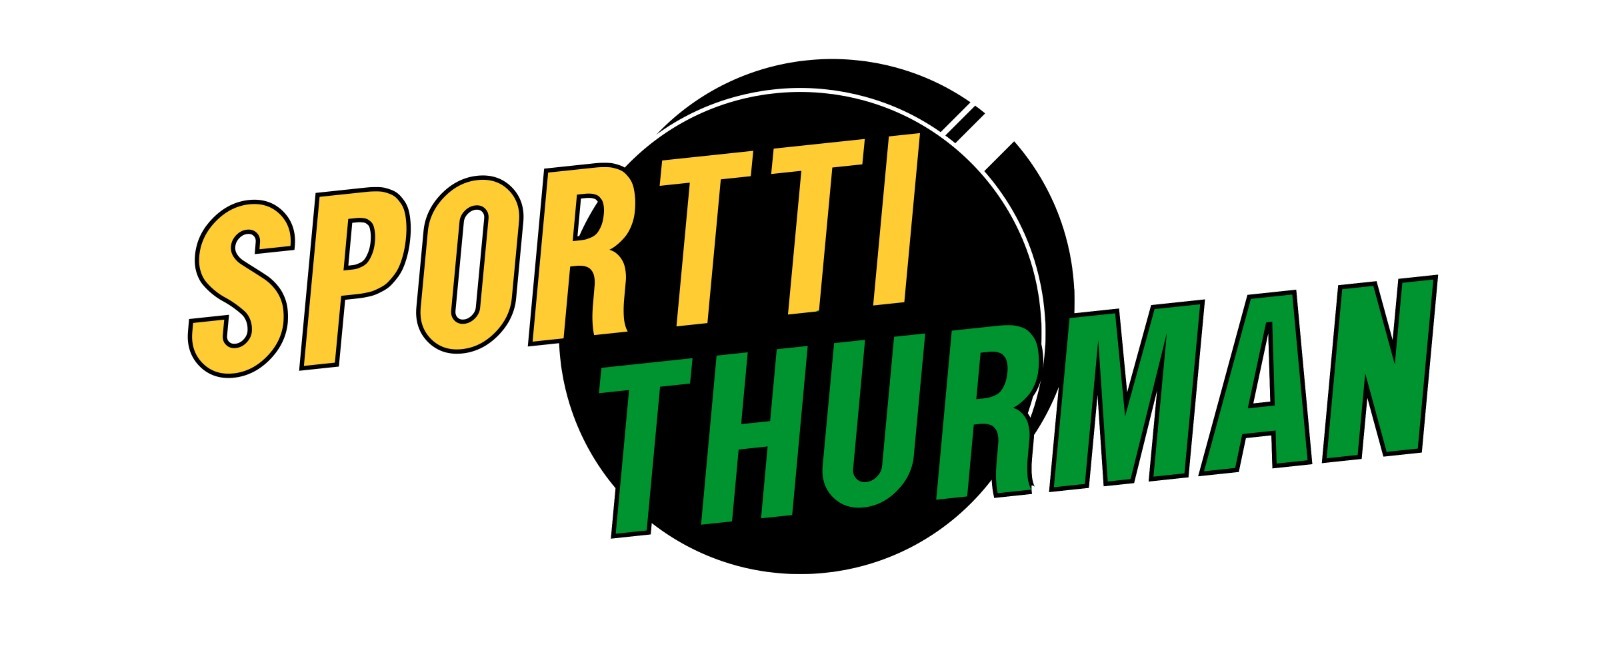 Sportti Thurman